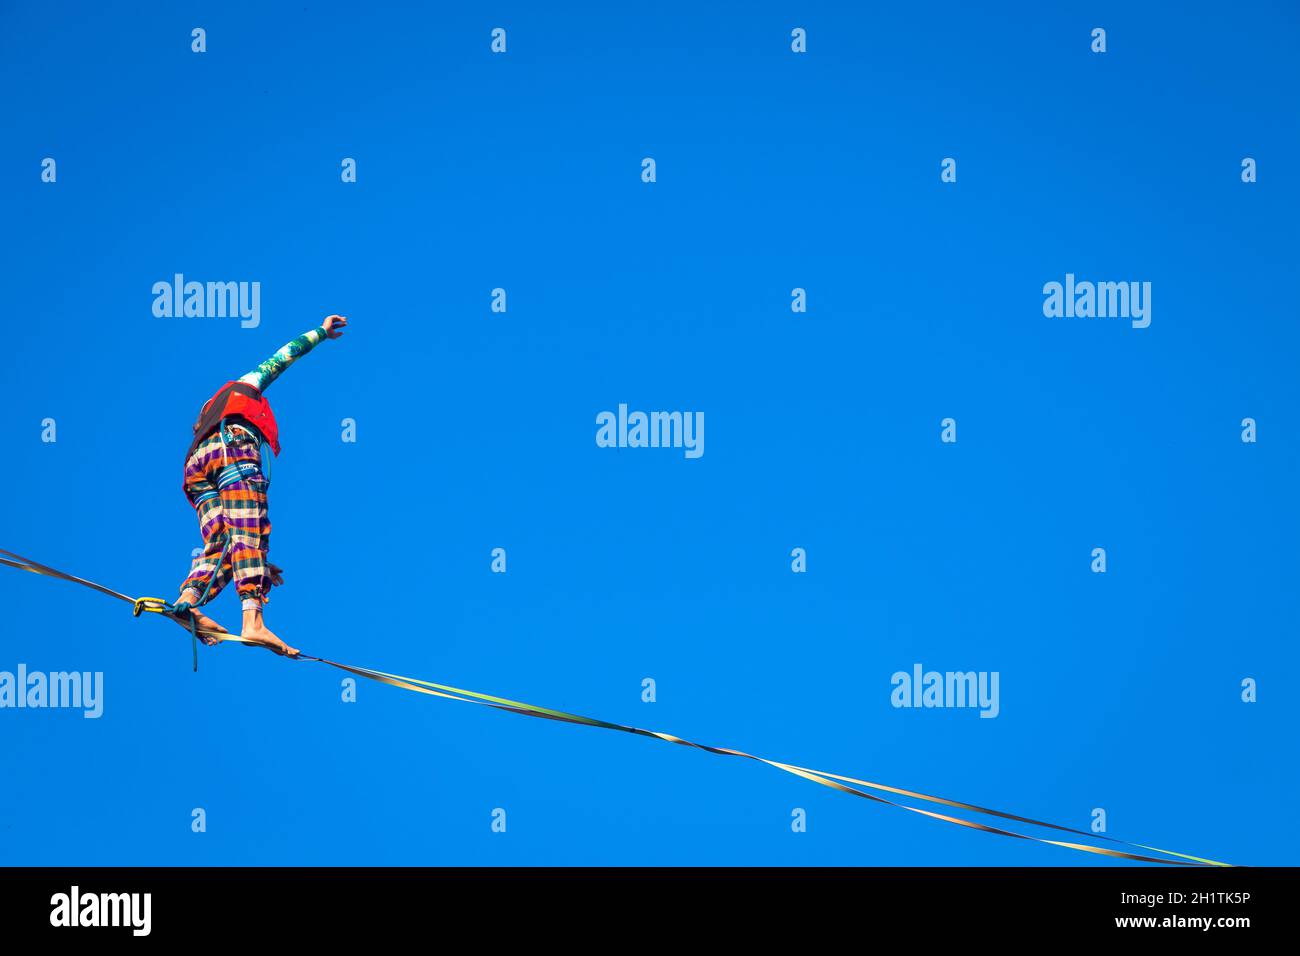 LANZO, ITALIEN - CA. OKTOBER 2020: Slackline-Athlet während seiner Performance. Konzentration, Balance und Abenteuer in diesem dynamischen Sport. Stockfoto